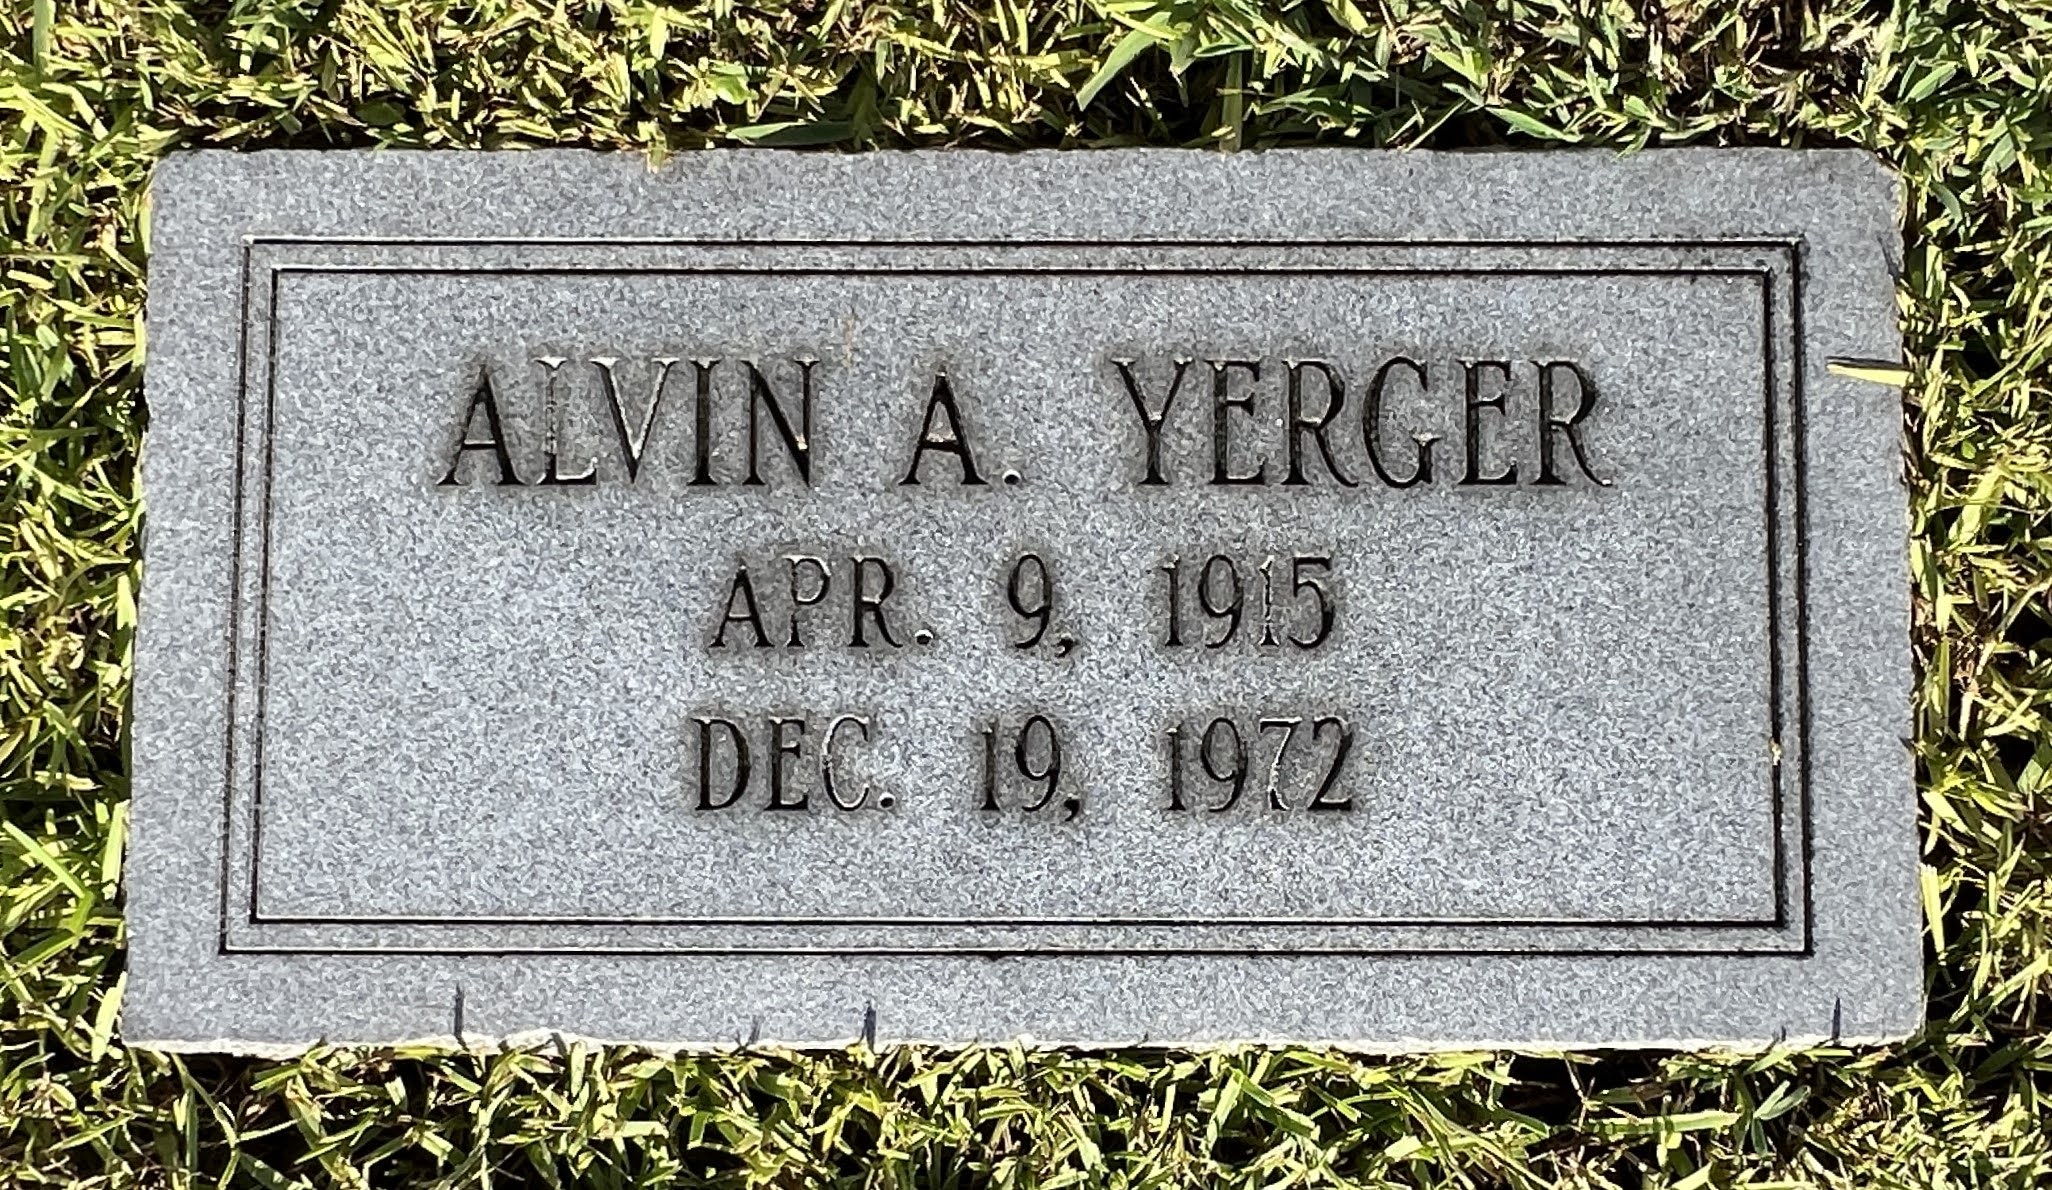 Alvin A Yerger